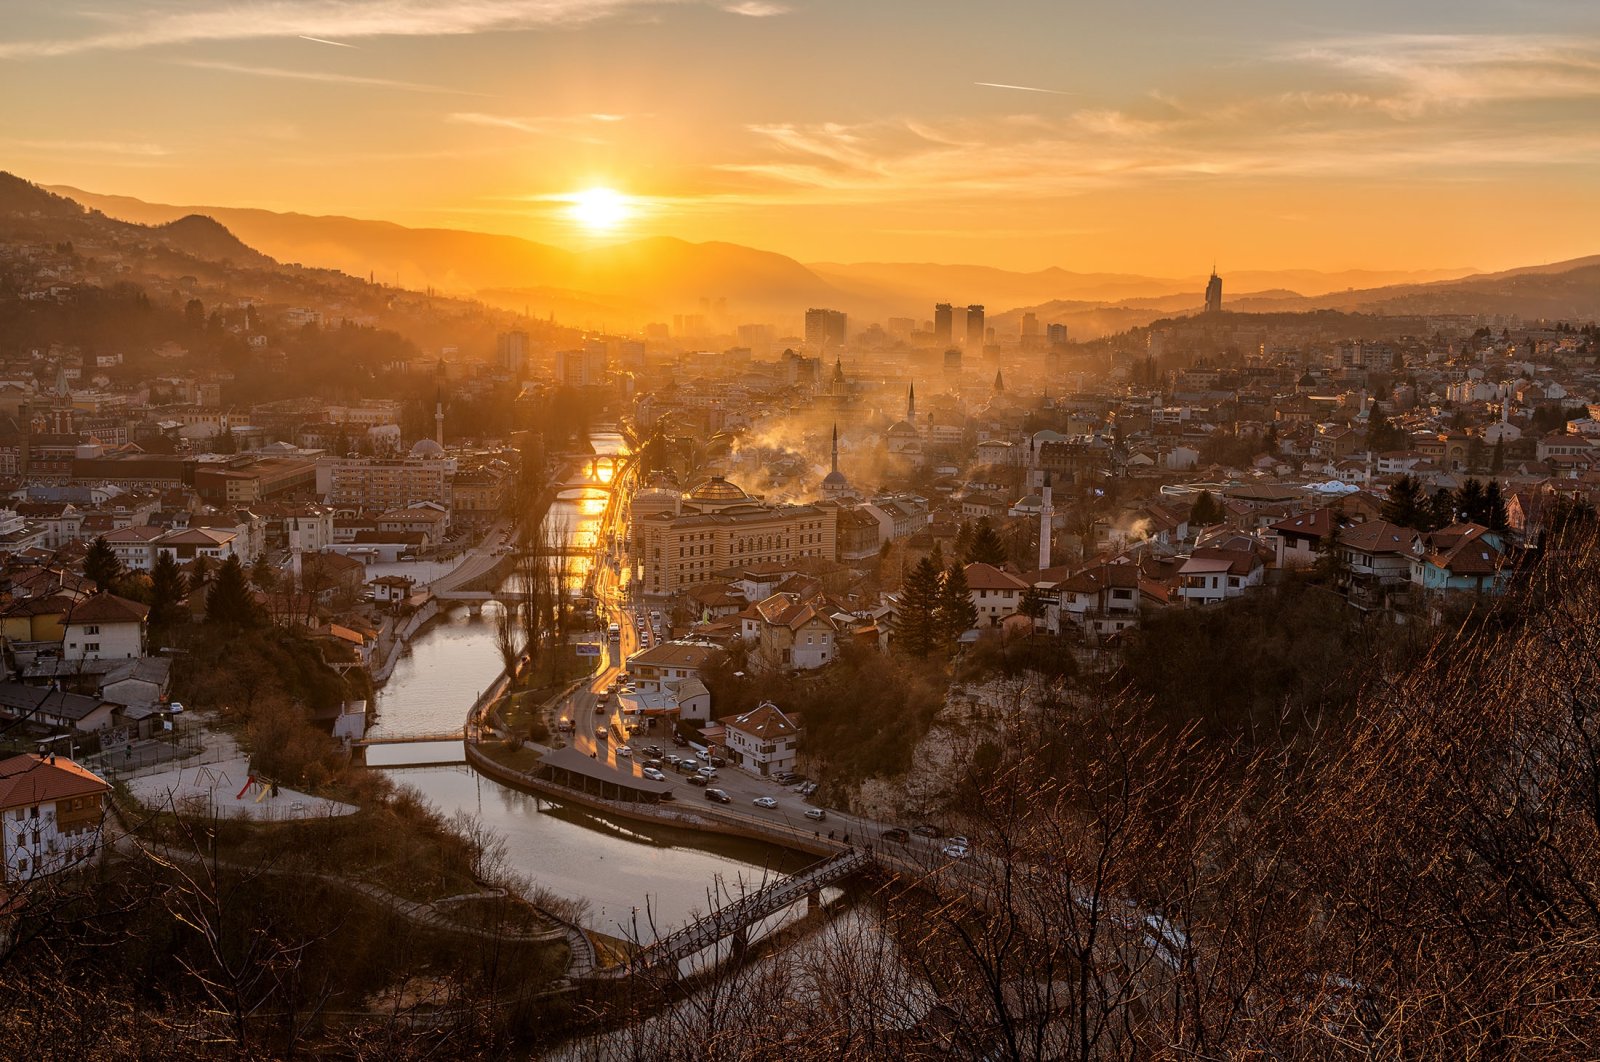 Sunset over Sarajevo, Bosnia-Herzegovina. (Shutterstock Photo)